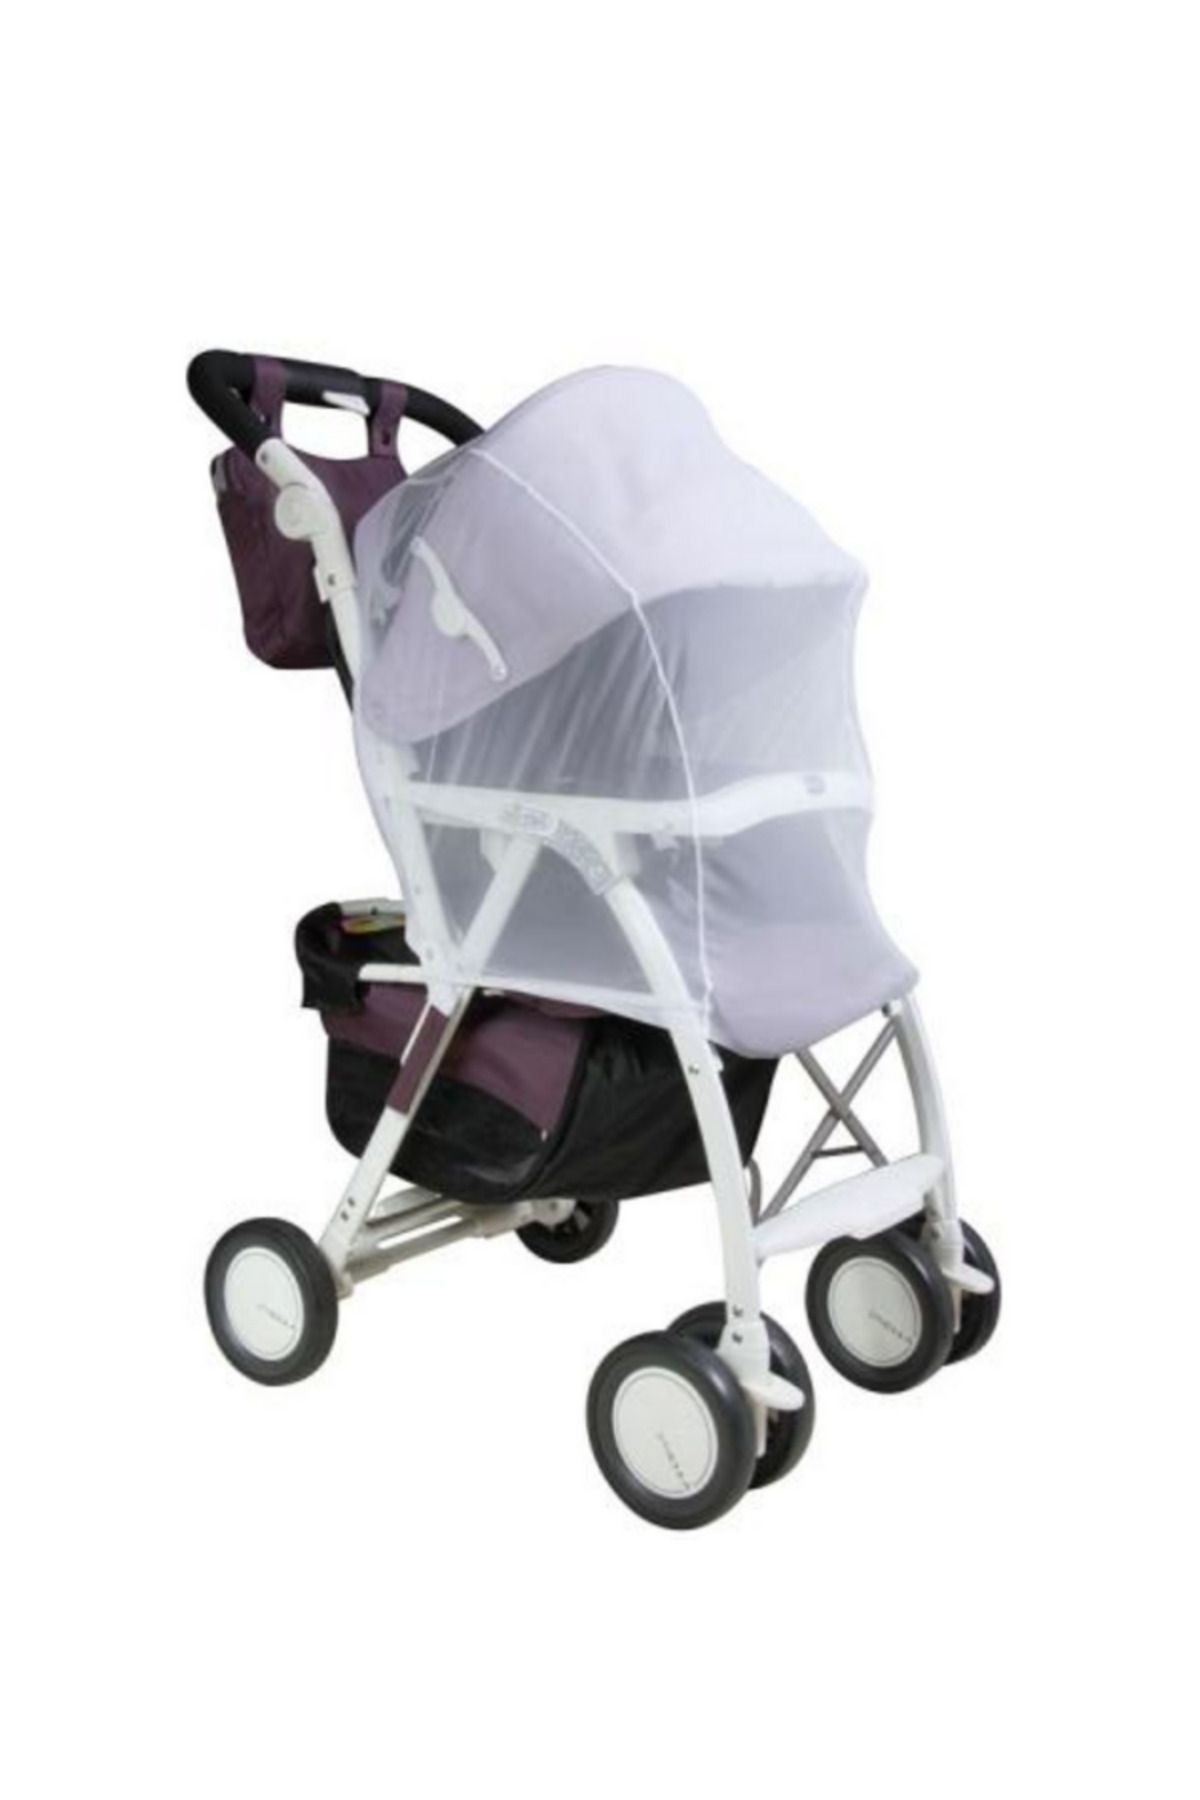 Elyshi Bebek Arabası Sinekliği & Bebek İçin Sineklik & Bebek Arabası İçin Yazlık Sineklik